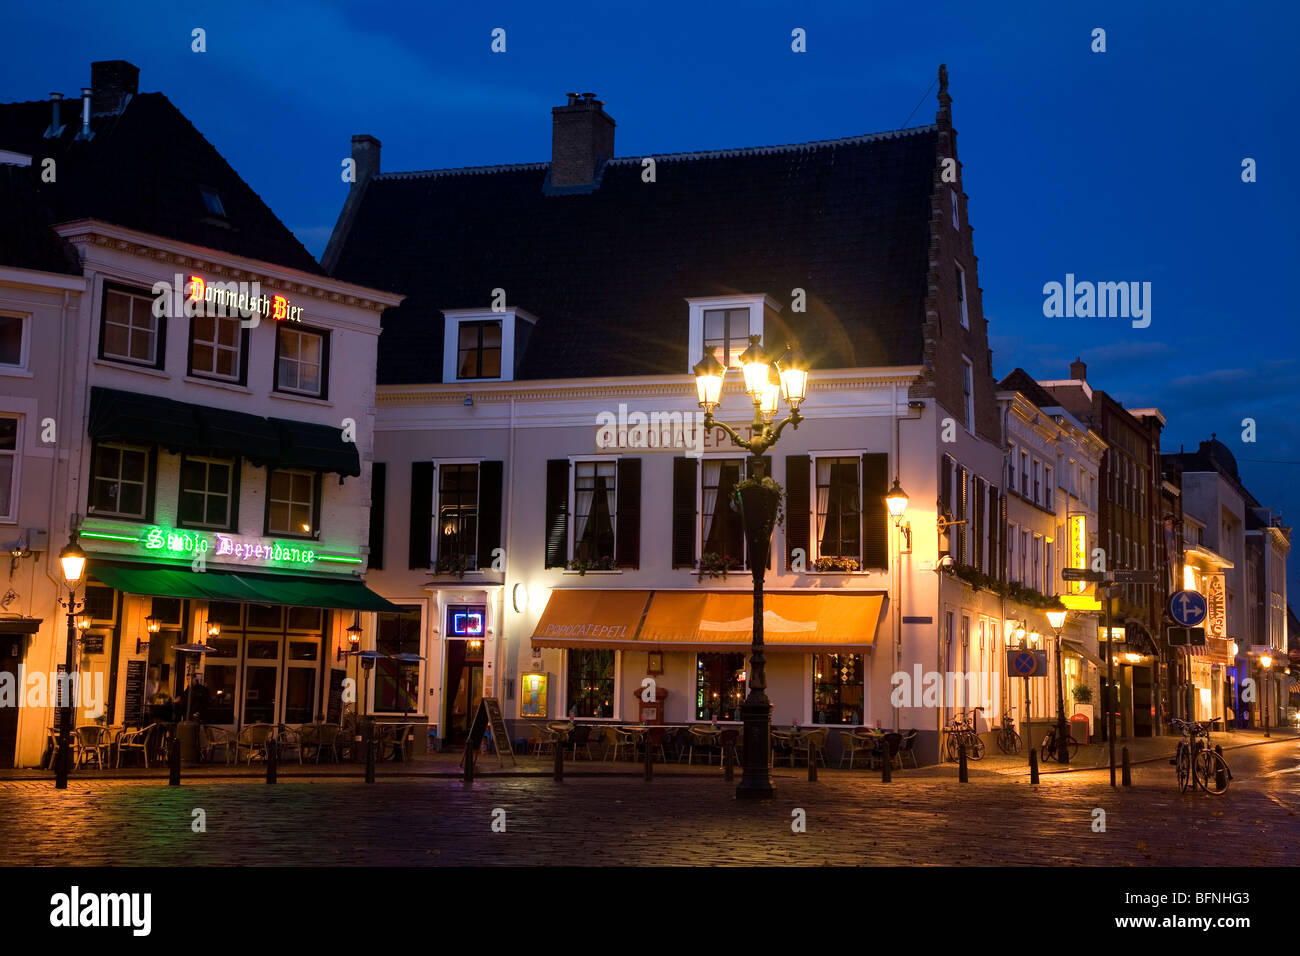 Breda in der Nacht. Die Stadt hat zahlreiche Kneipen, Bars und Restaurants und ist bekannt für seine lebendige und gastfreundliche Nachtleben. Stockfoto